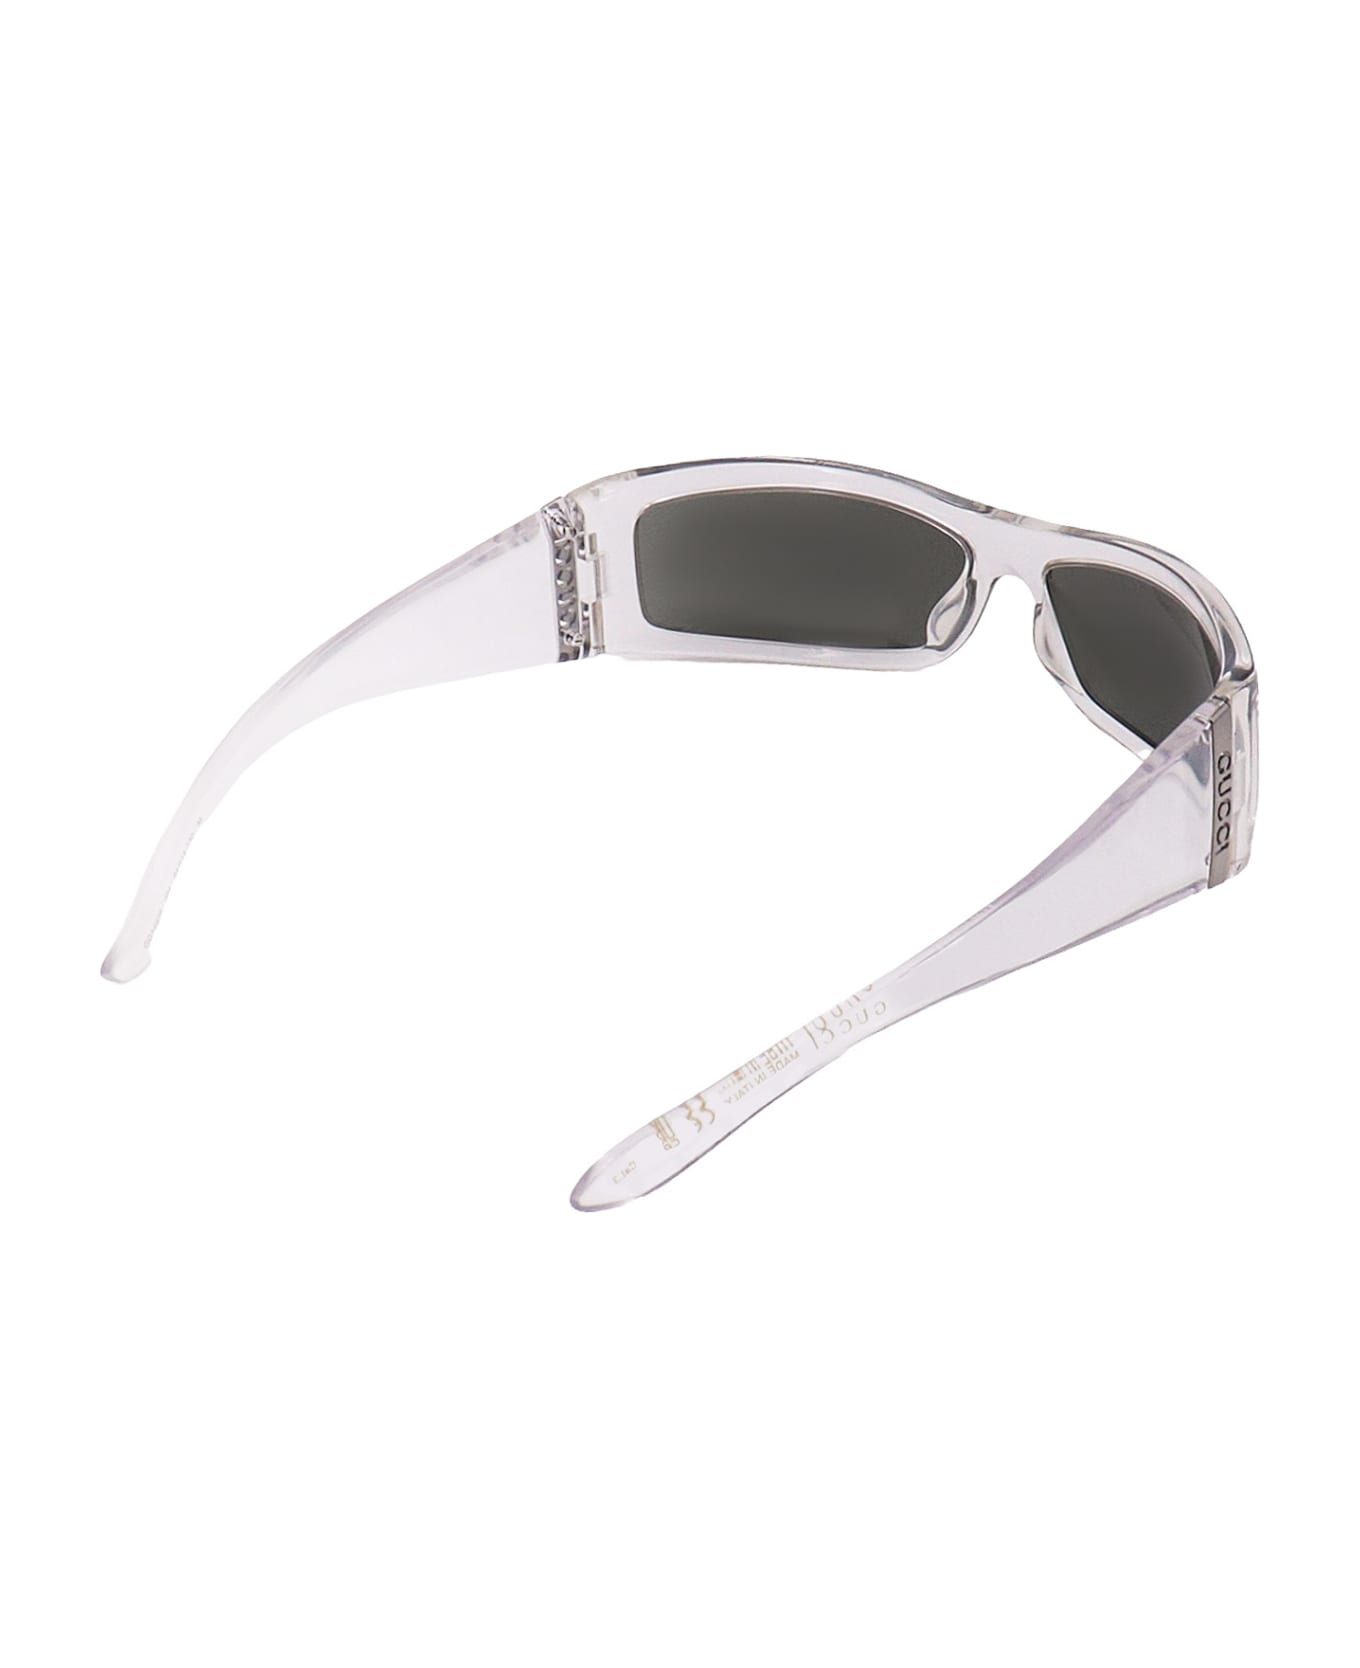 Gucci Eyewear Sunglasses - Grey